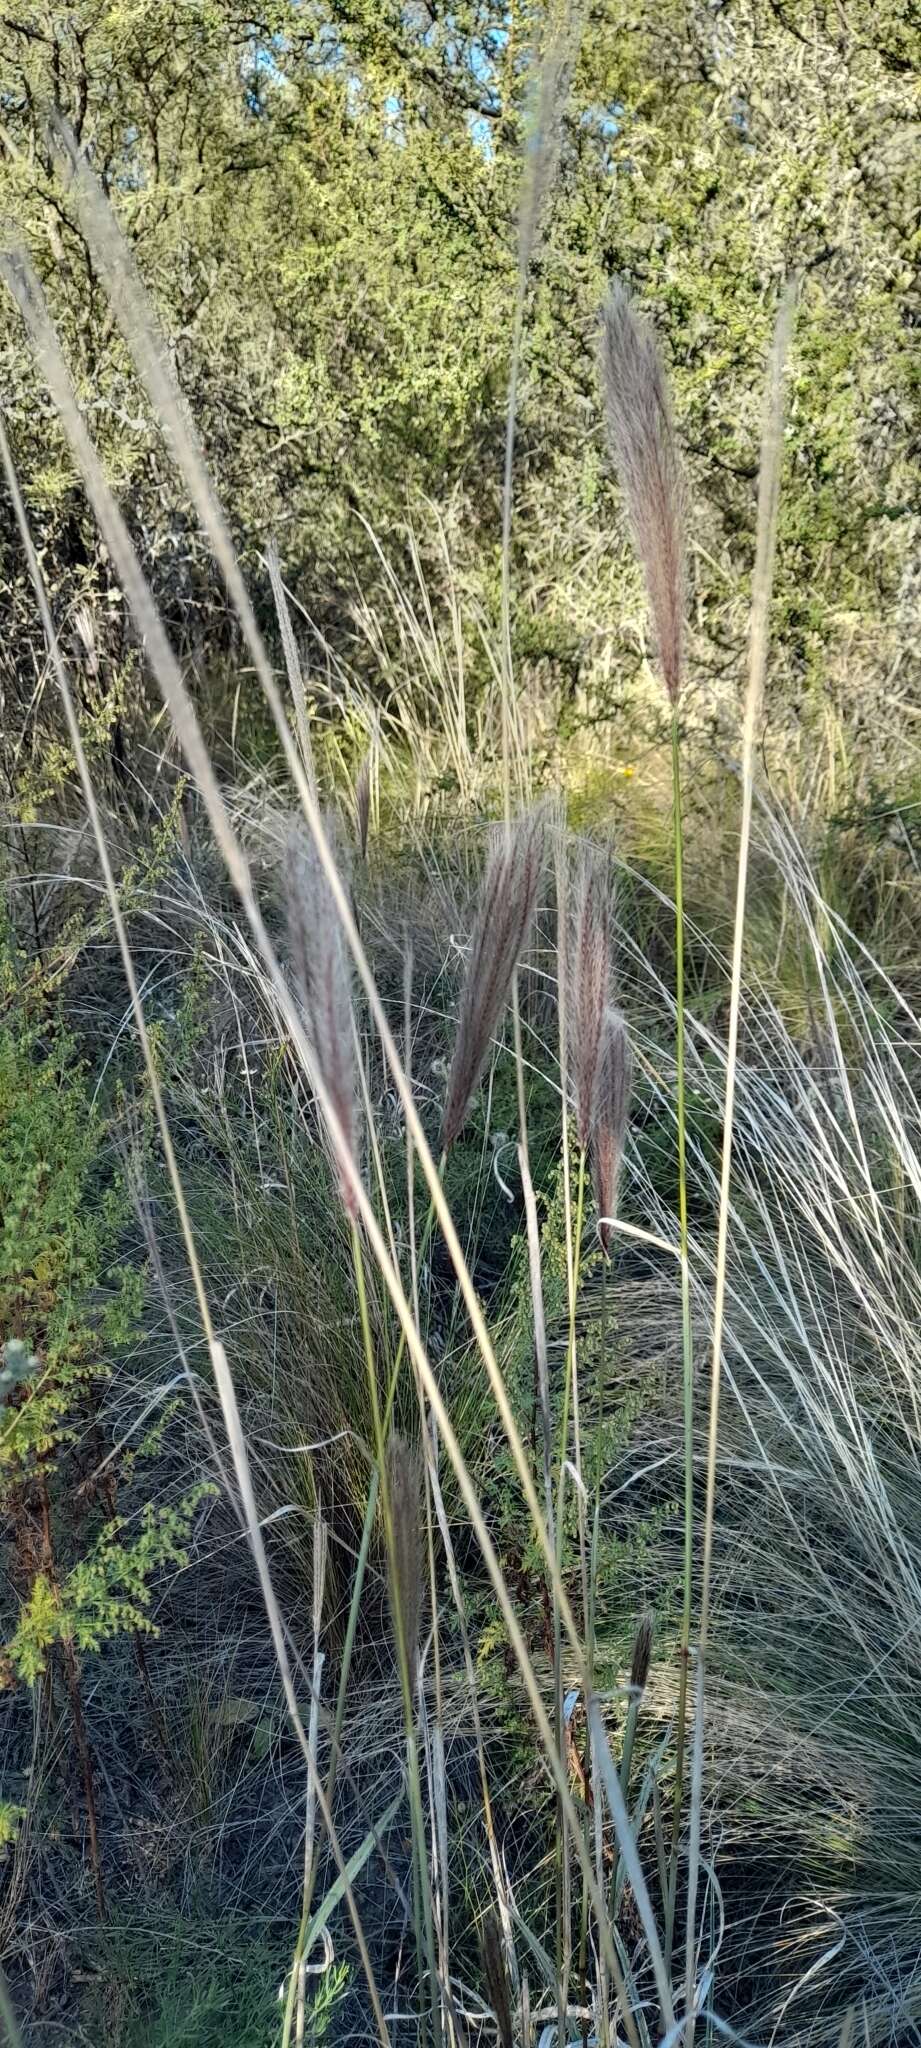 Image of false Rhodes grass